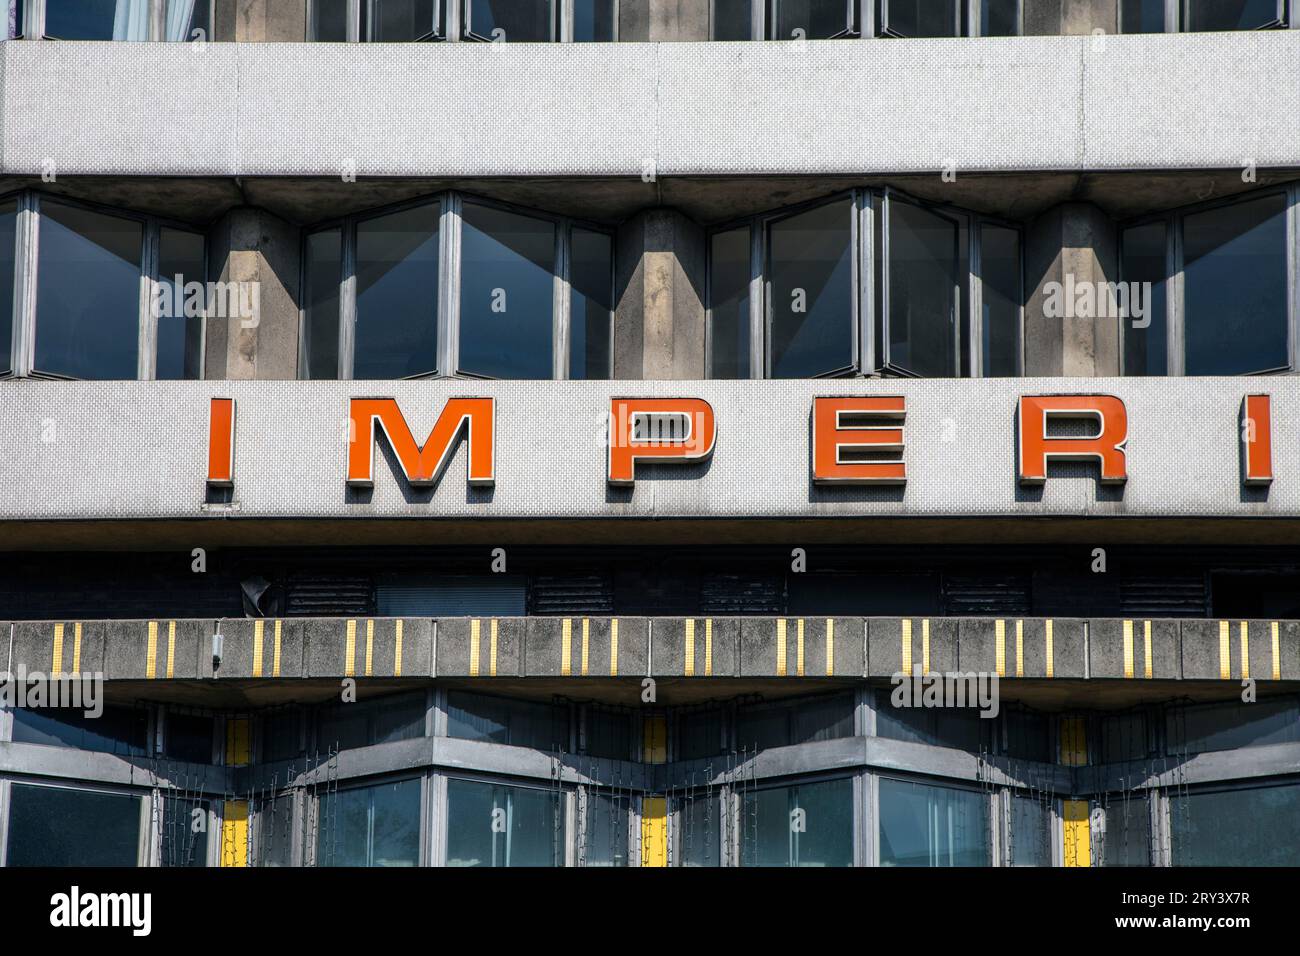 Extérieur de style brutaliste de l'Imperial Hotel, Bloomsbury, Londres, Angleterre Banque D'Images